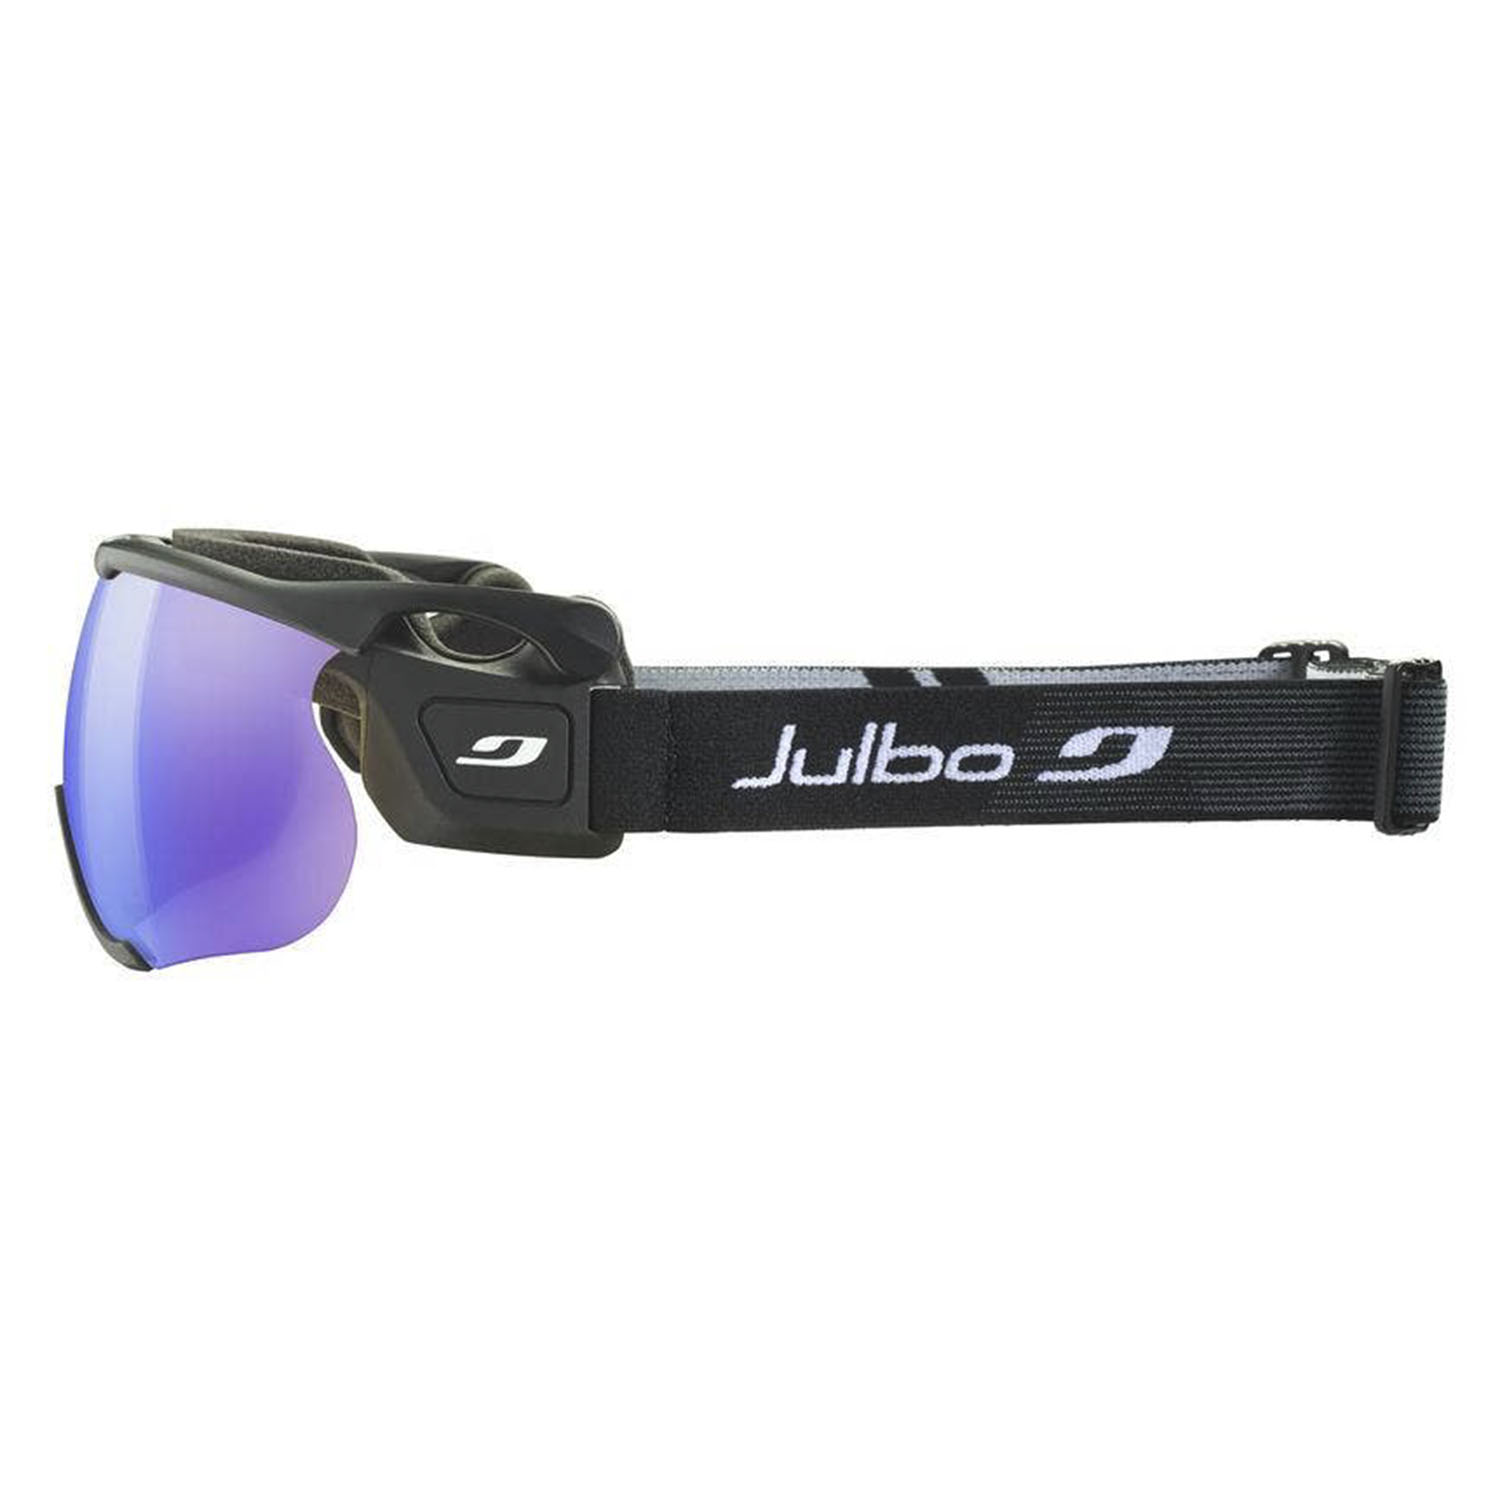 Визор для беговых лыж Julbo Sniper Evo L Black/Reactiv 1-3 High Contrast Flash Blue